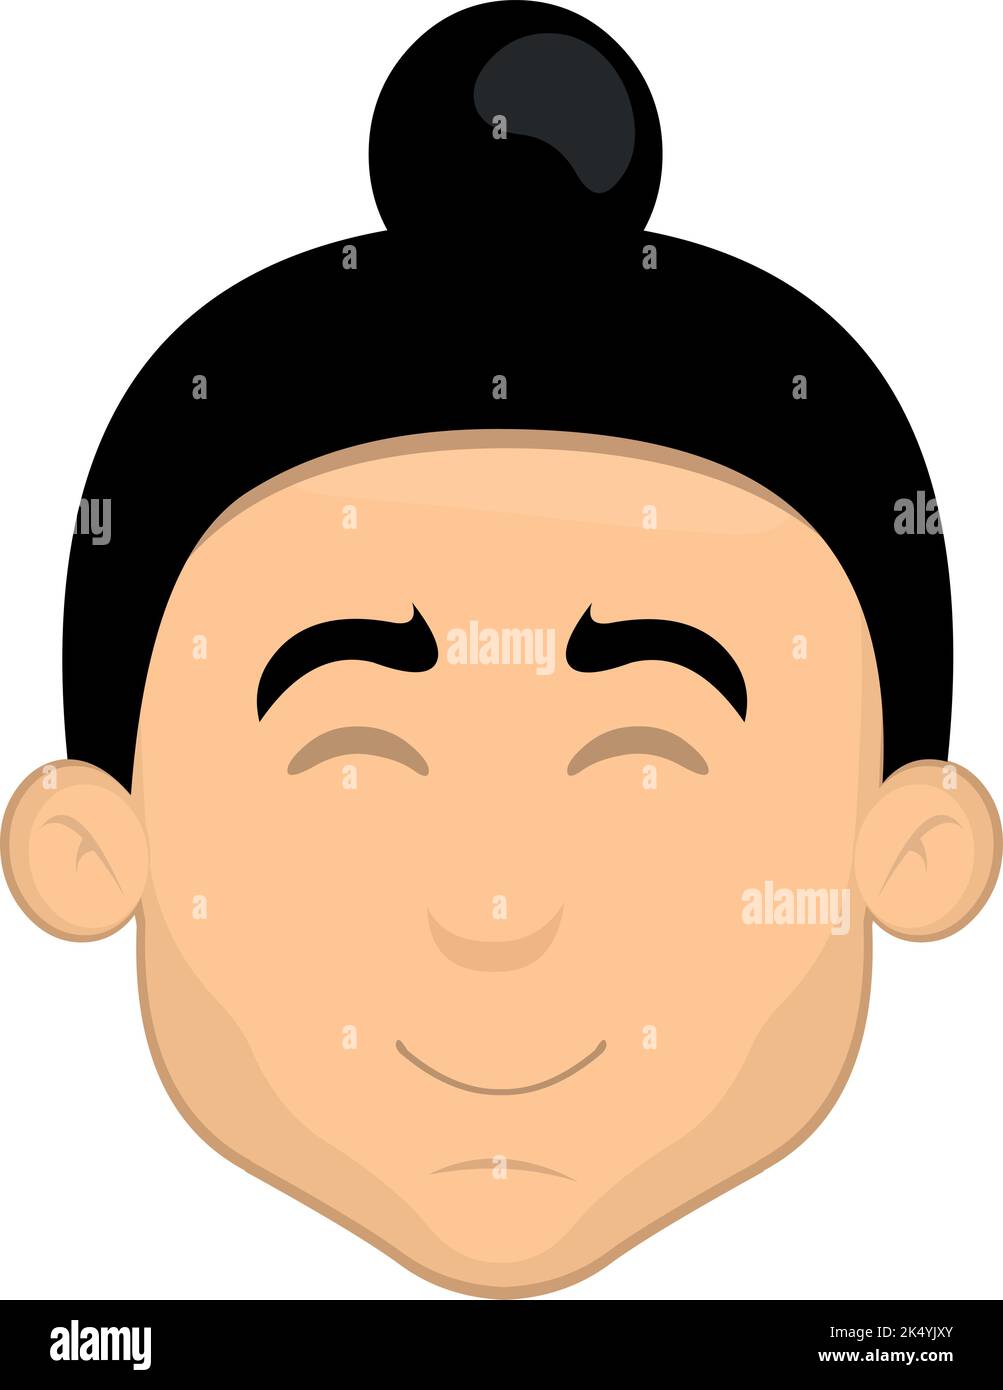 Illustrazione vettoriale della testa di un cartone animato asiatico con un pelo di mordente Illustrazione Vettoriale